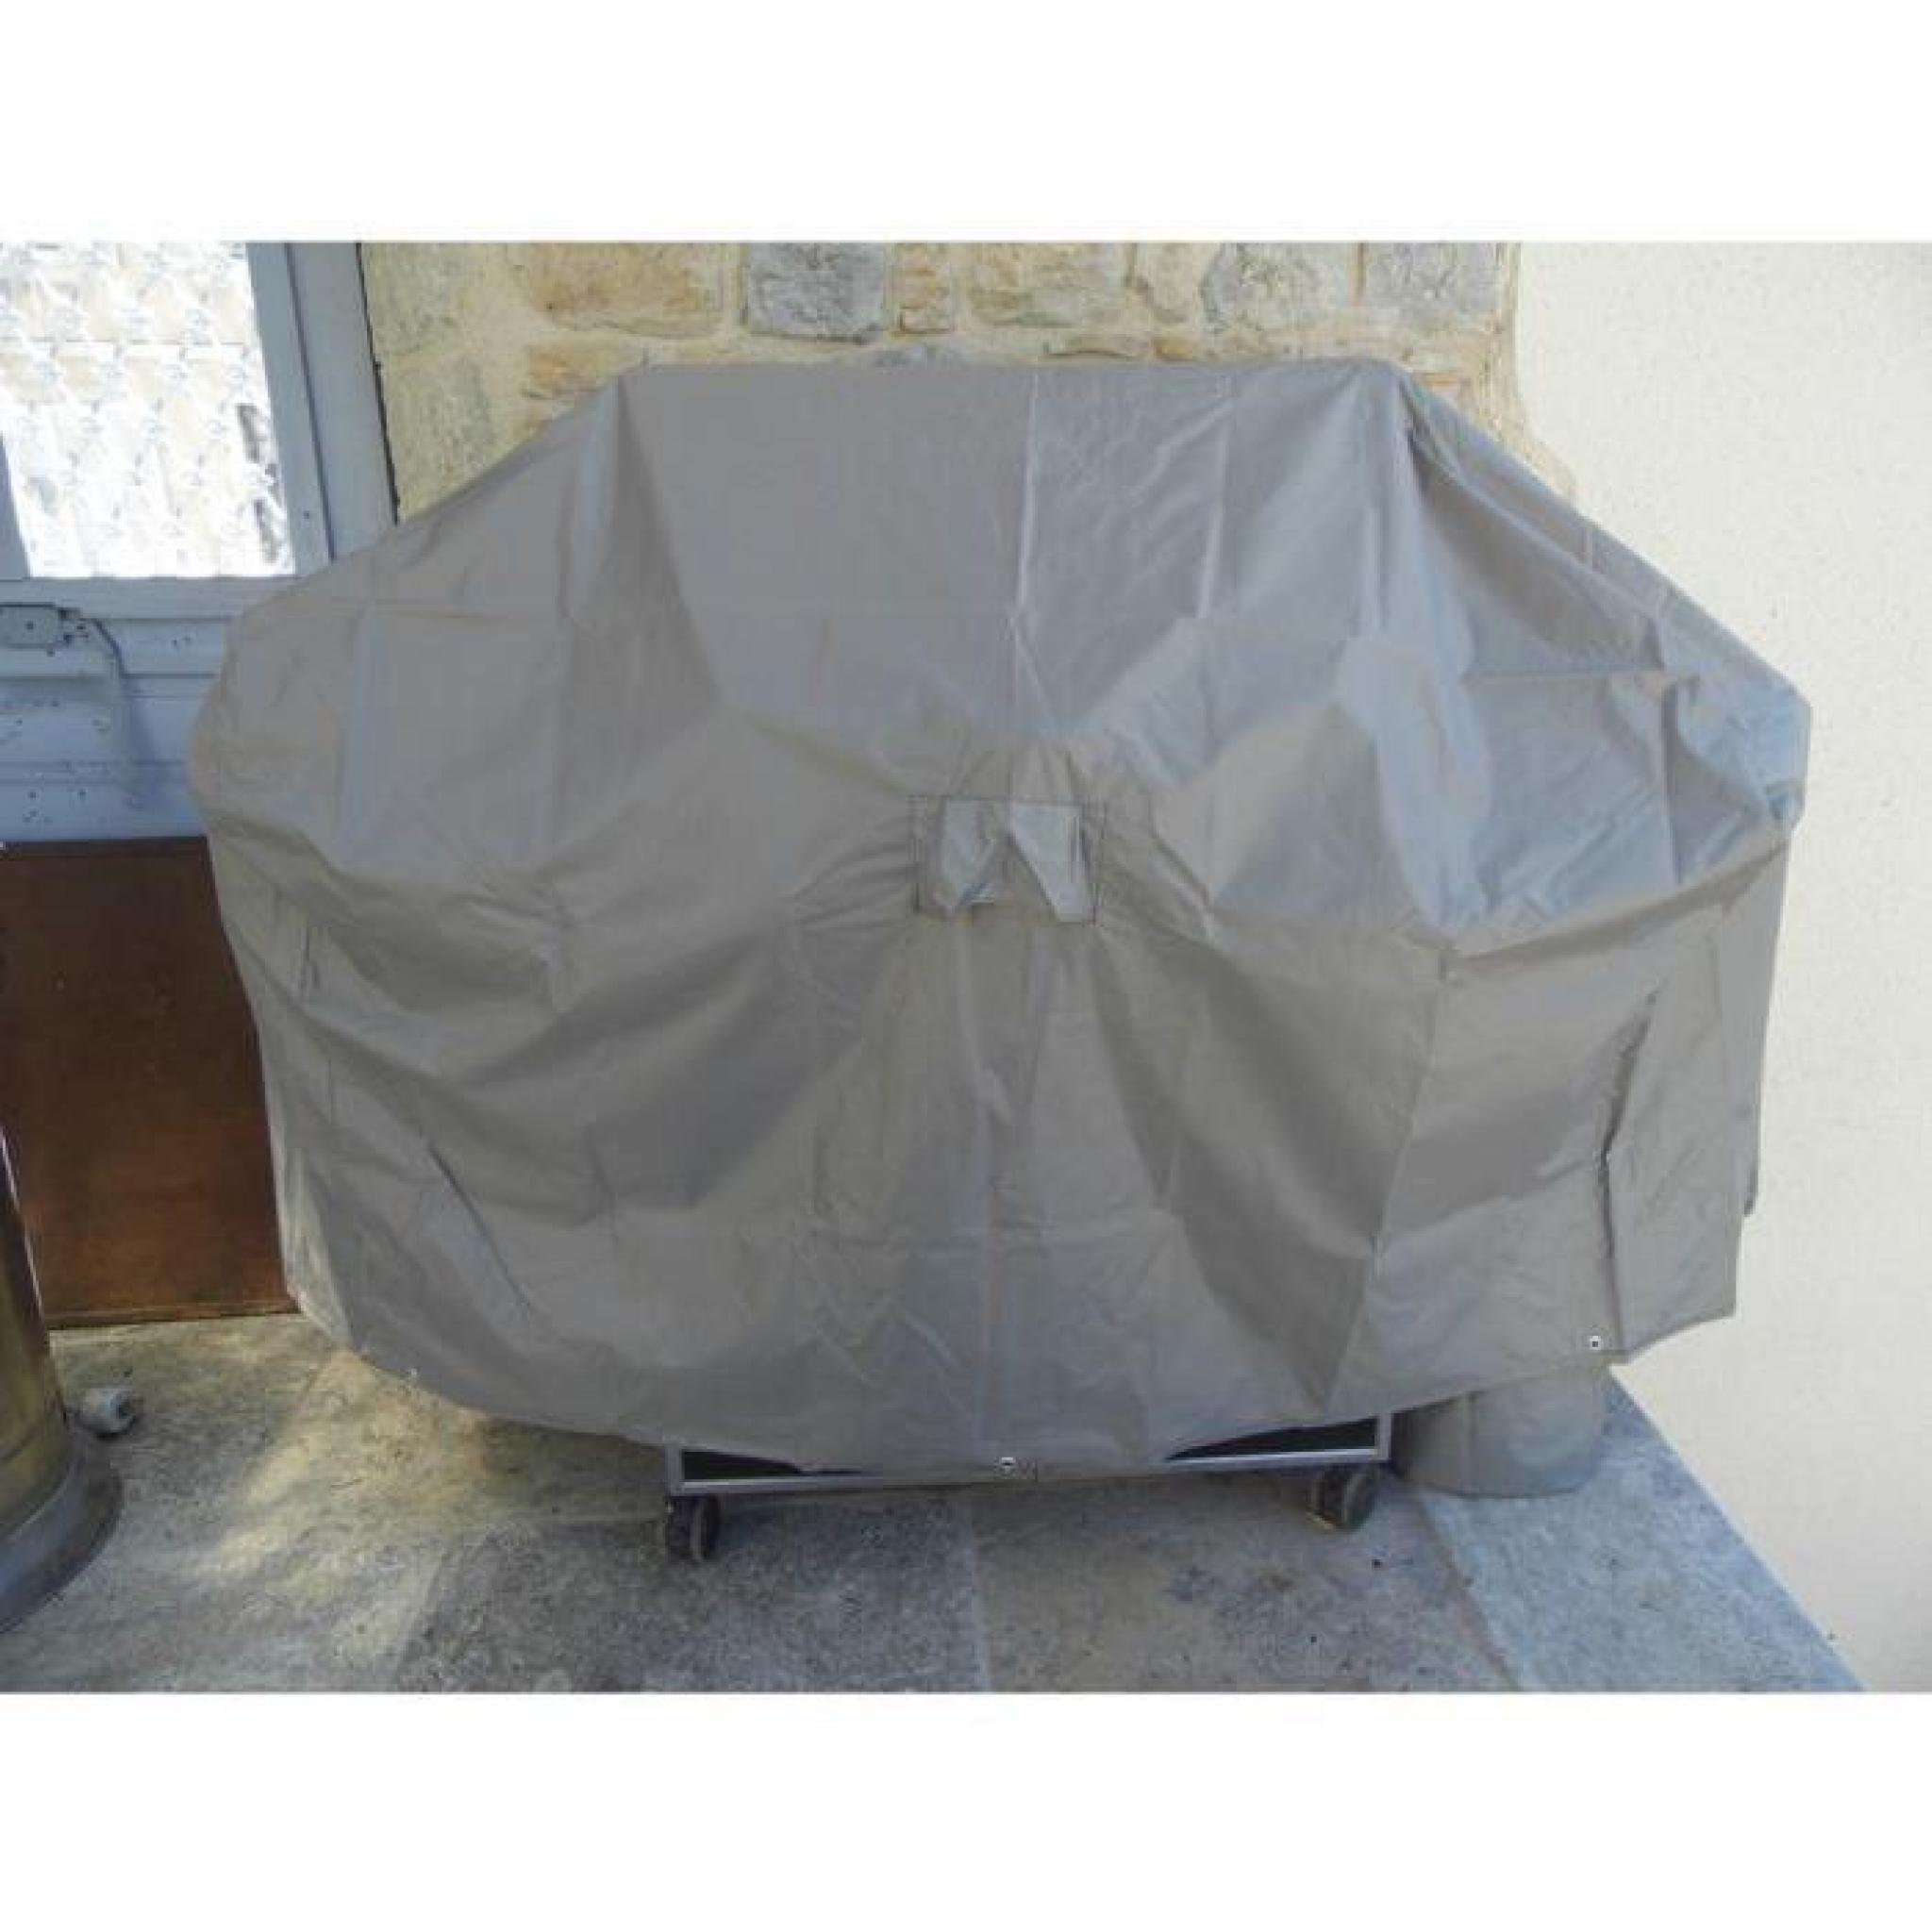 Housse de protection pour barbecue rectangulaire - Dim : 150 x 80 x 90 cm